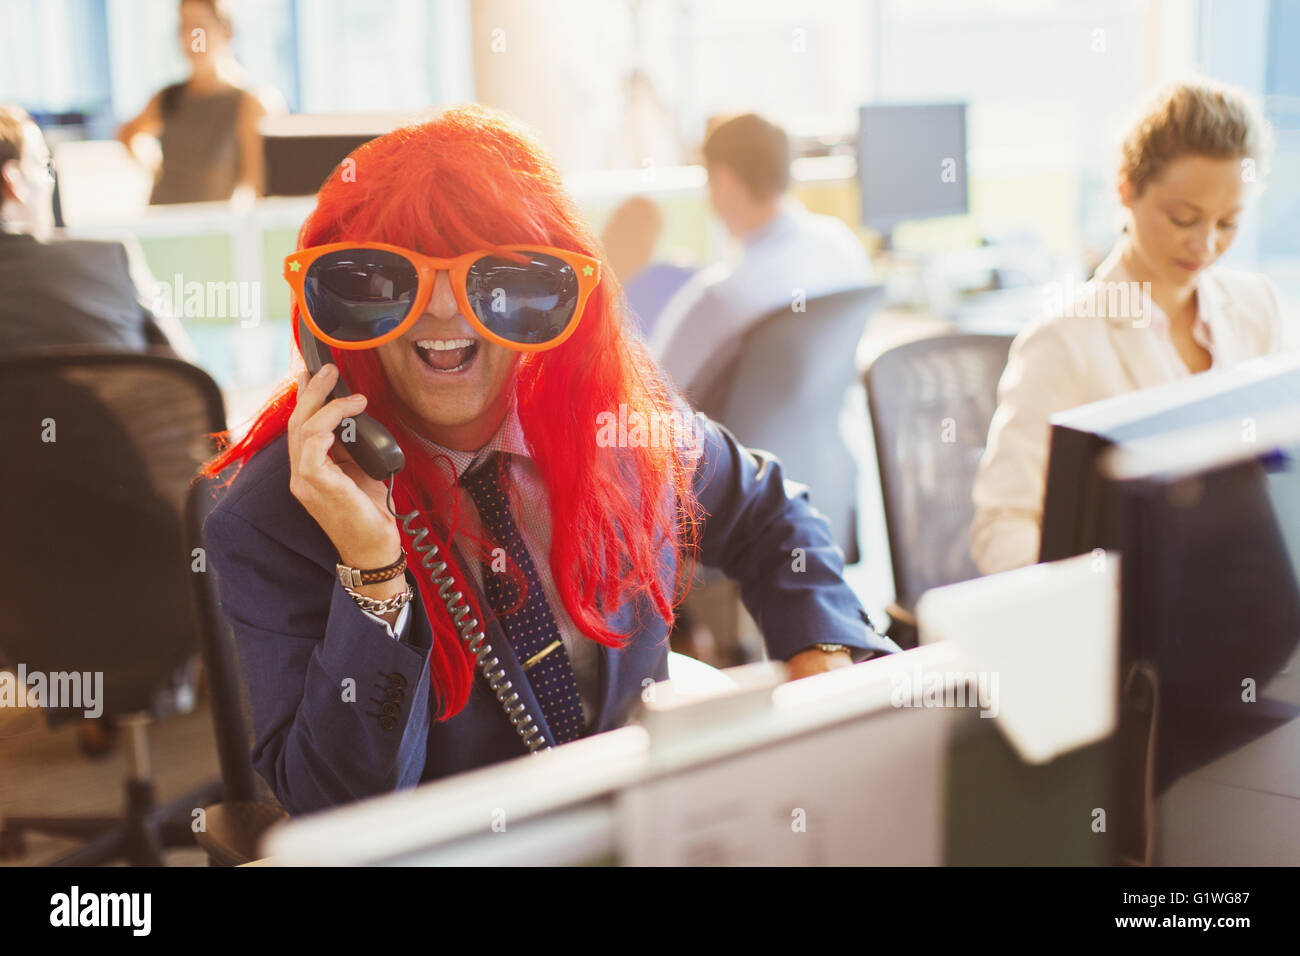 Espiègle Portrait of businessman wearing red perruque et lunettes énorme in office Banque D'Images